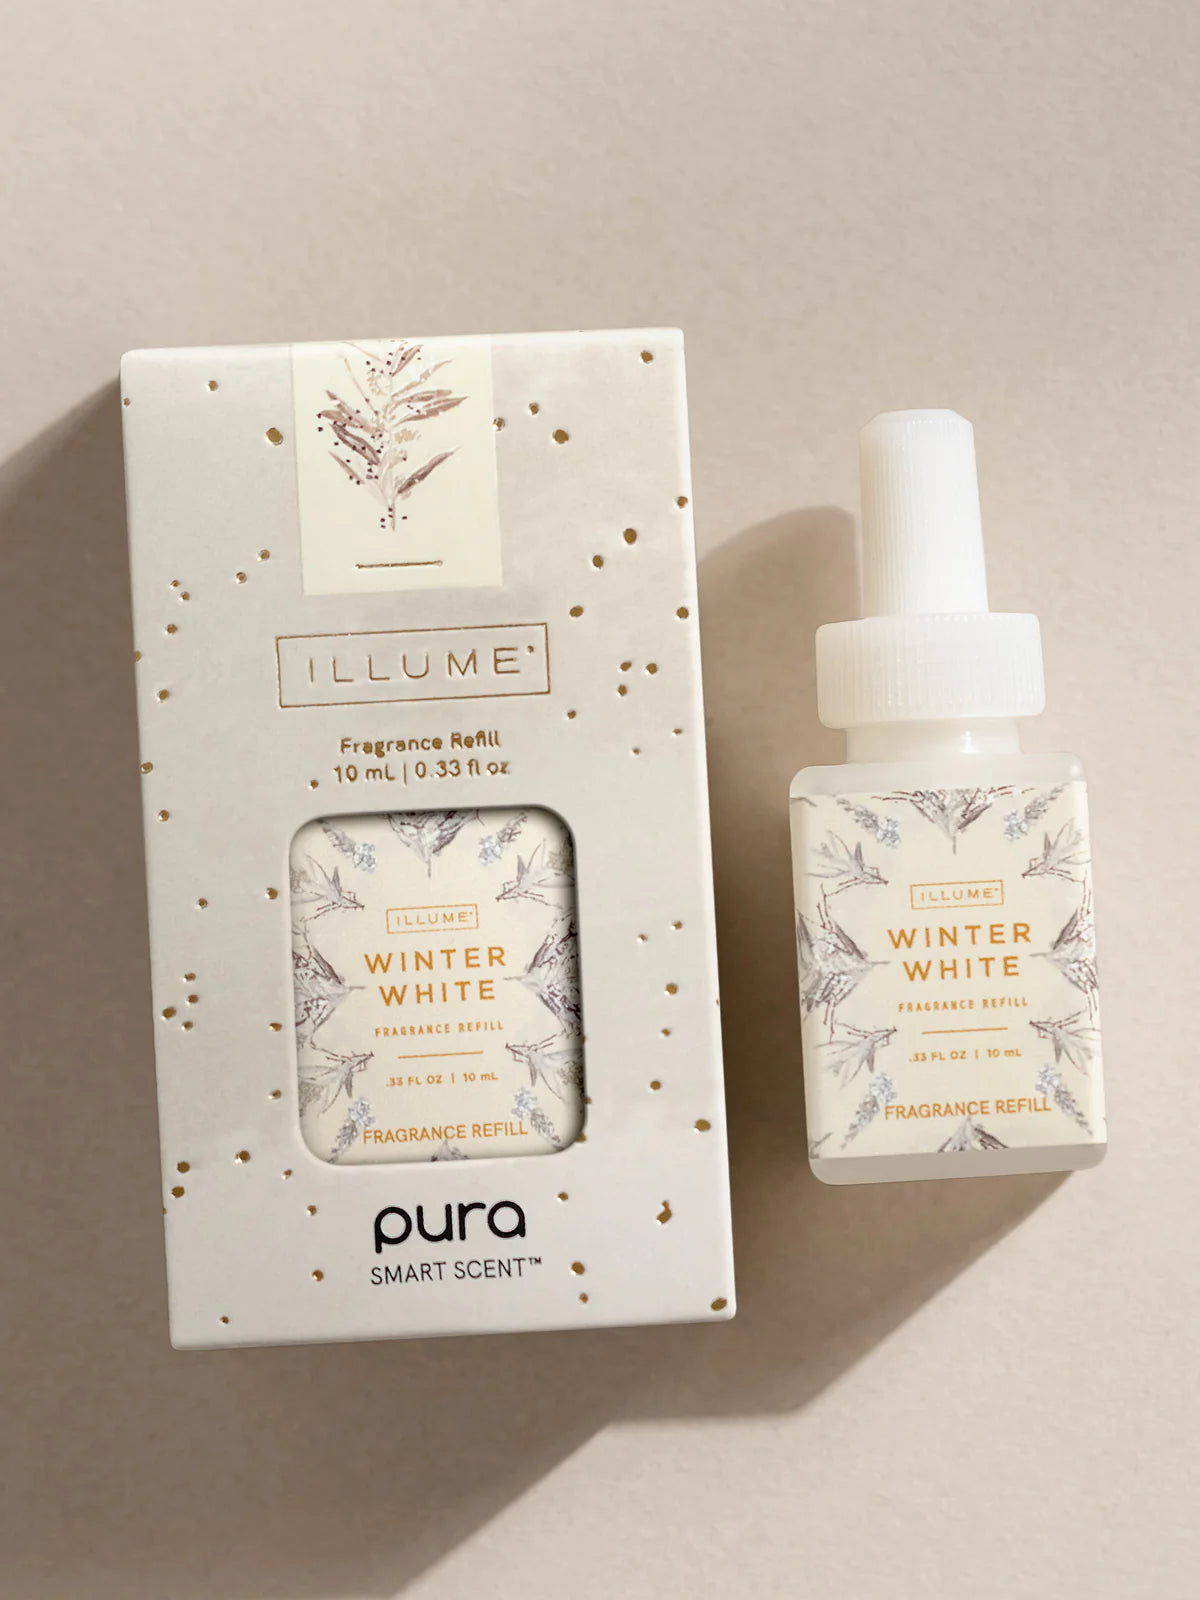 Pura Scent Winter White by Illume